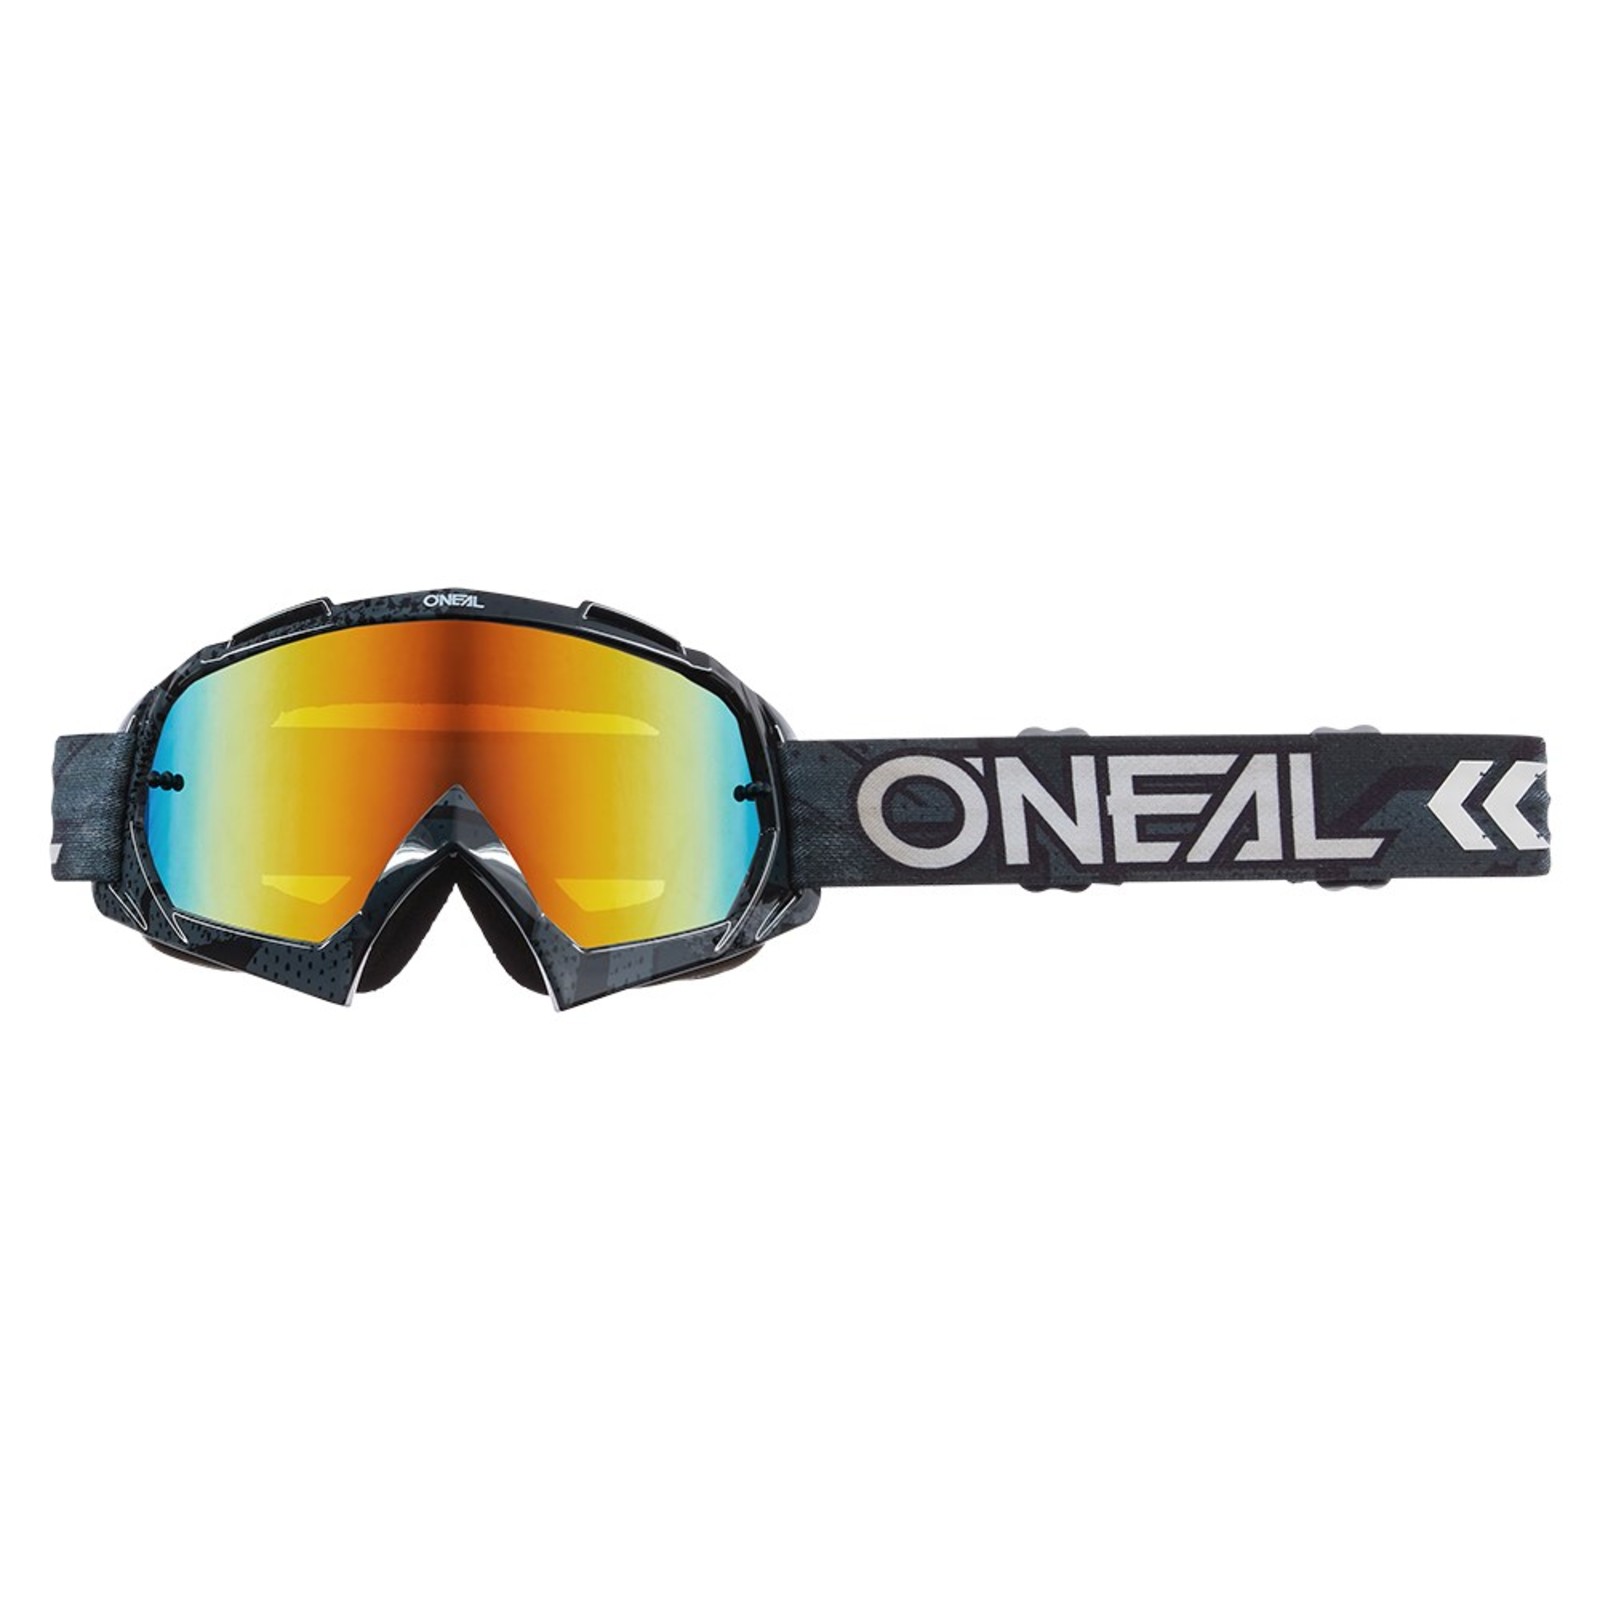 Akozon Motorradbrille Motorrad Motocross Offroad Dirt Bike Rennbrille Brille Augenschutz PC Objektiv Grüner Rahmen + bunte Linse 